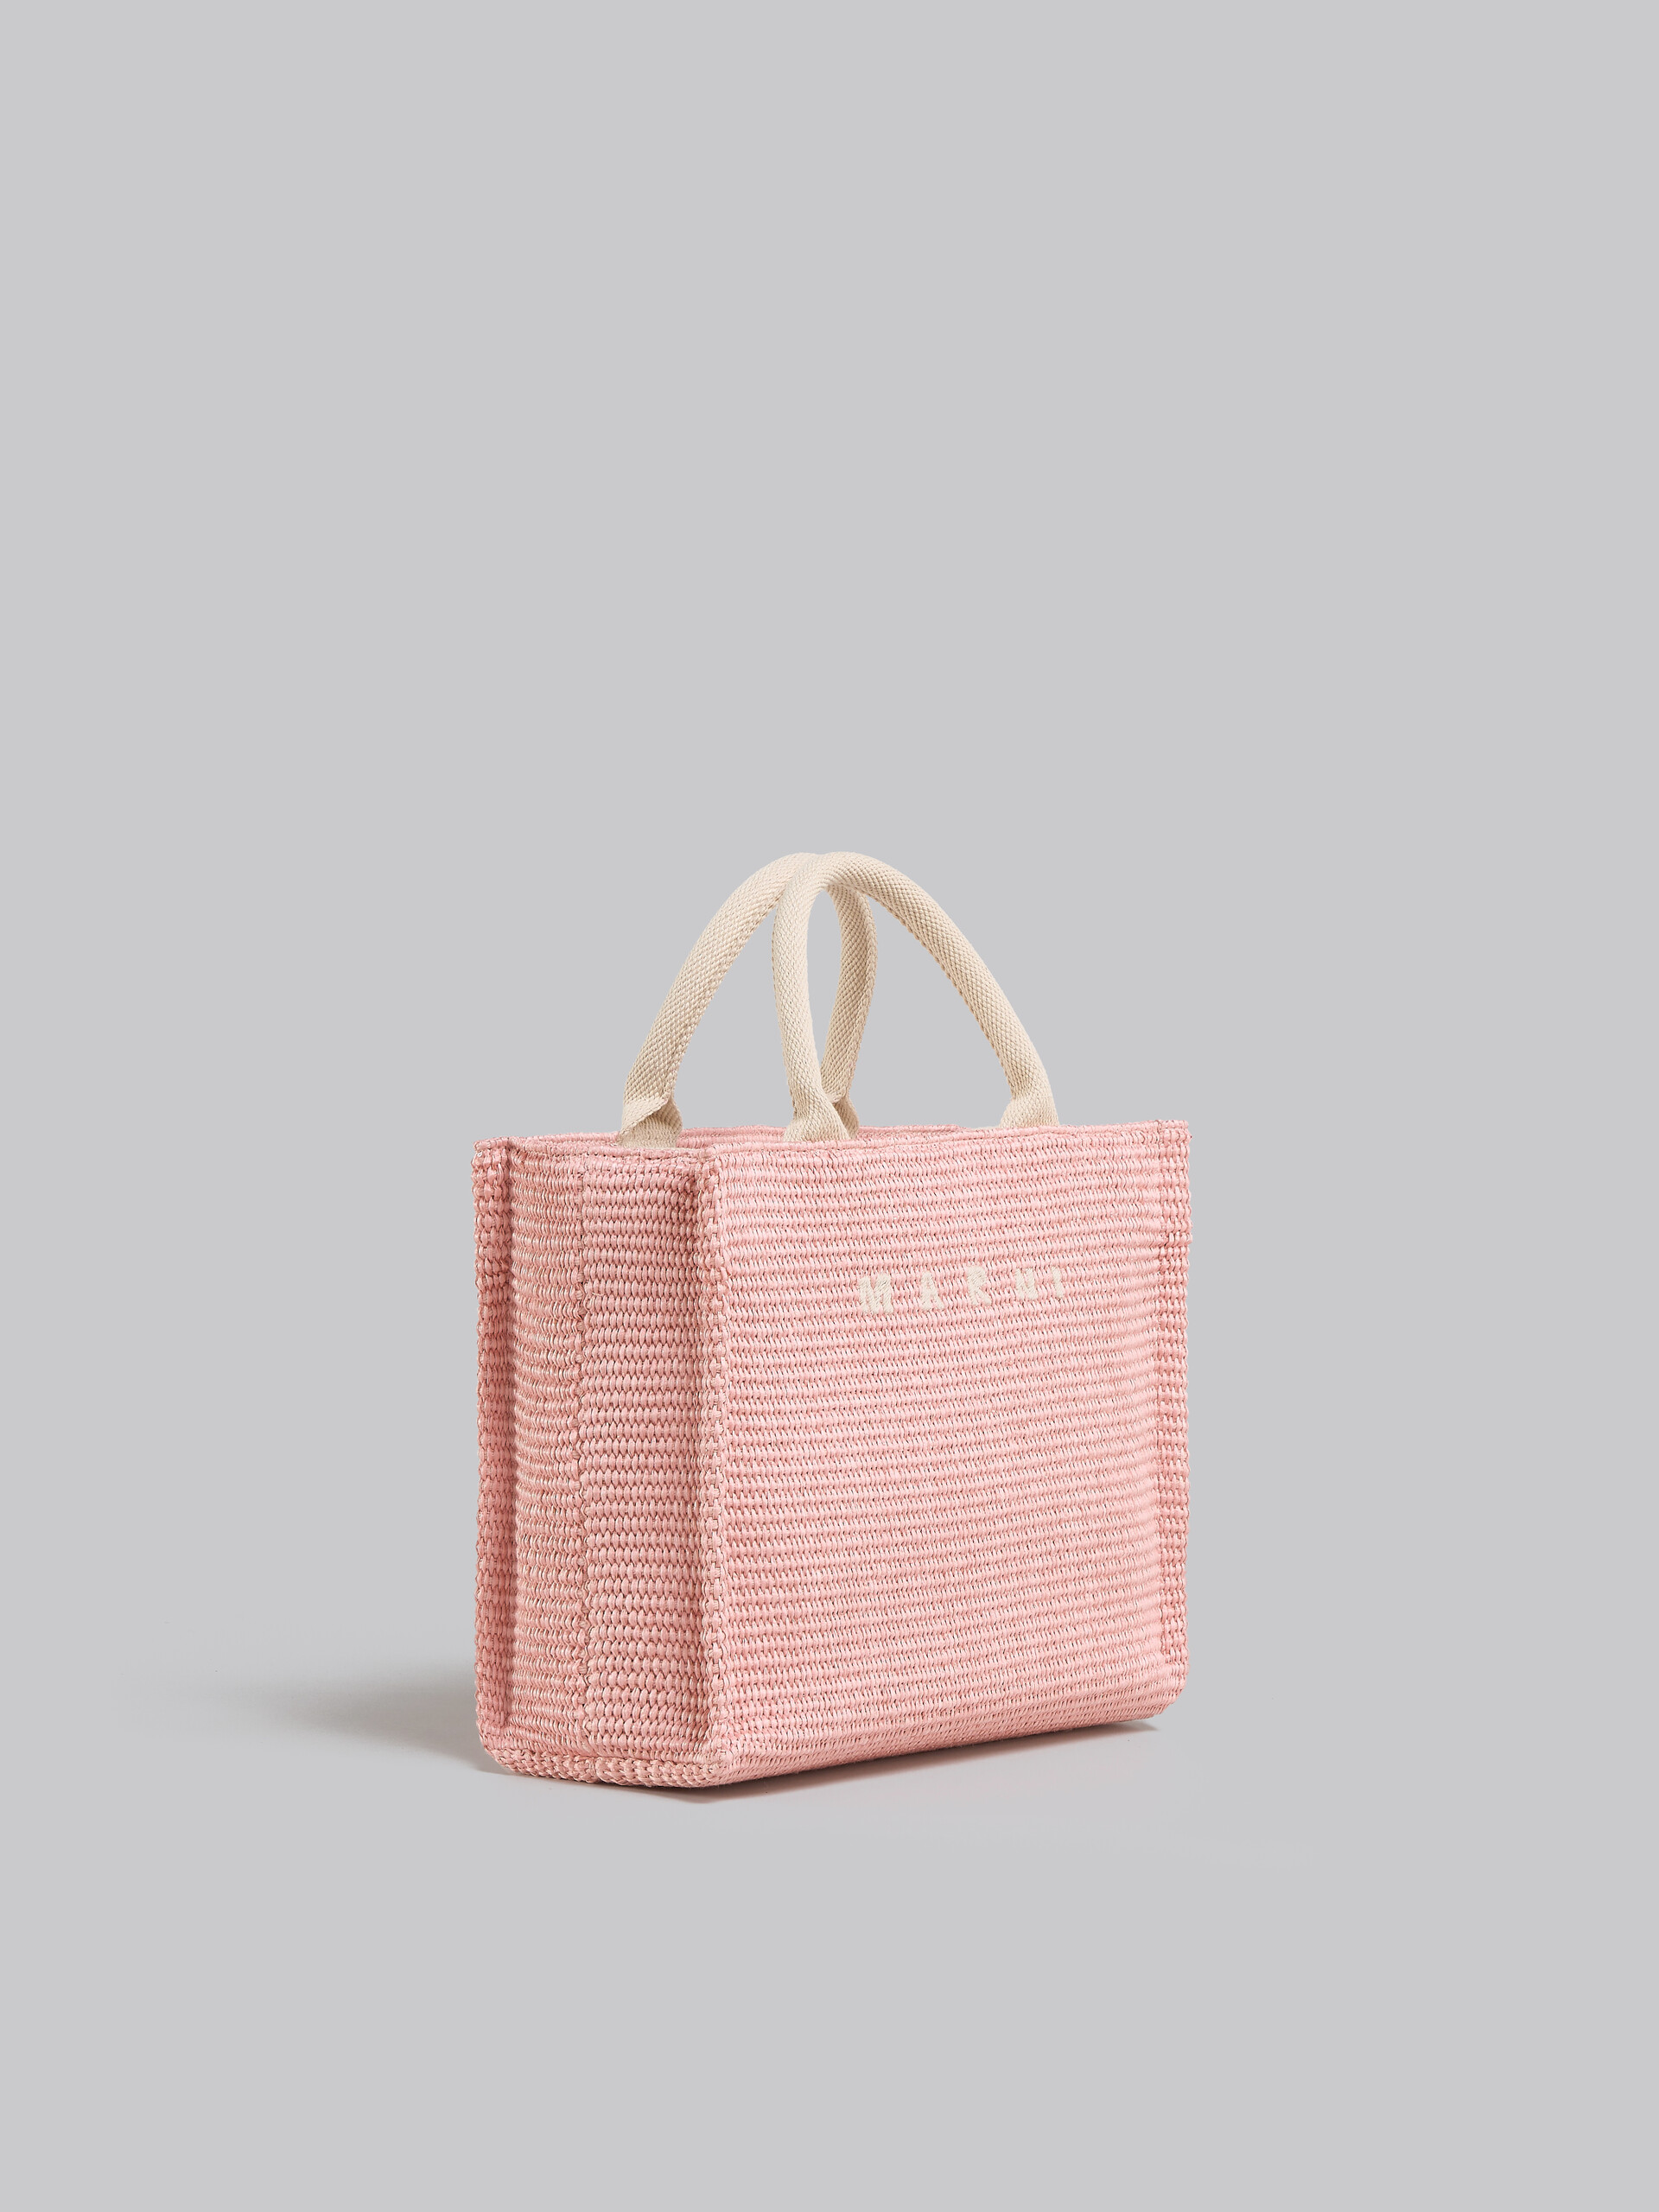 Tote Bag Piccola in tessuto effetto rafia lilla - Borse shopping - Image 6